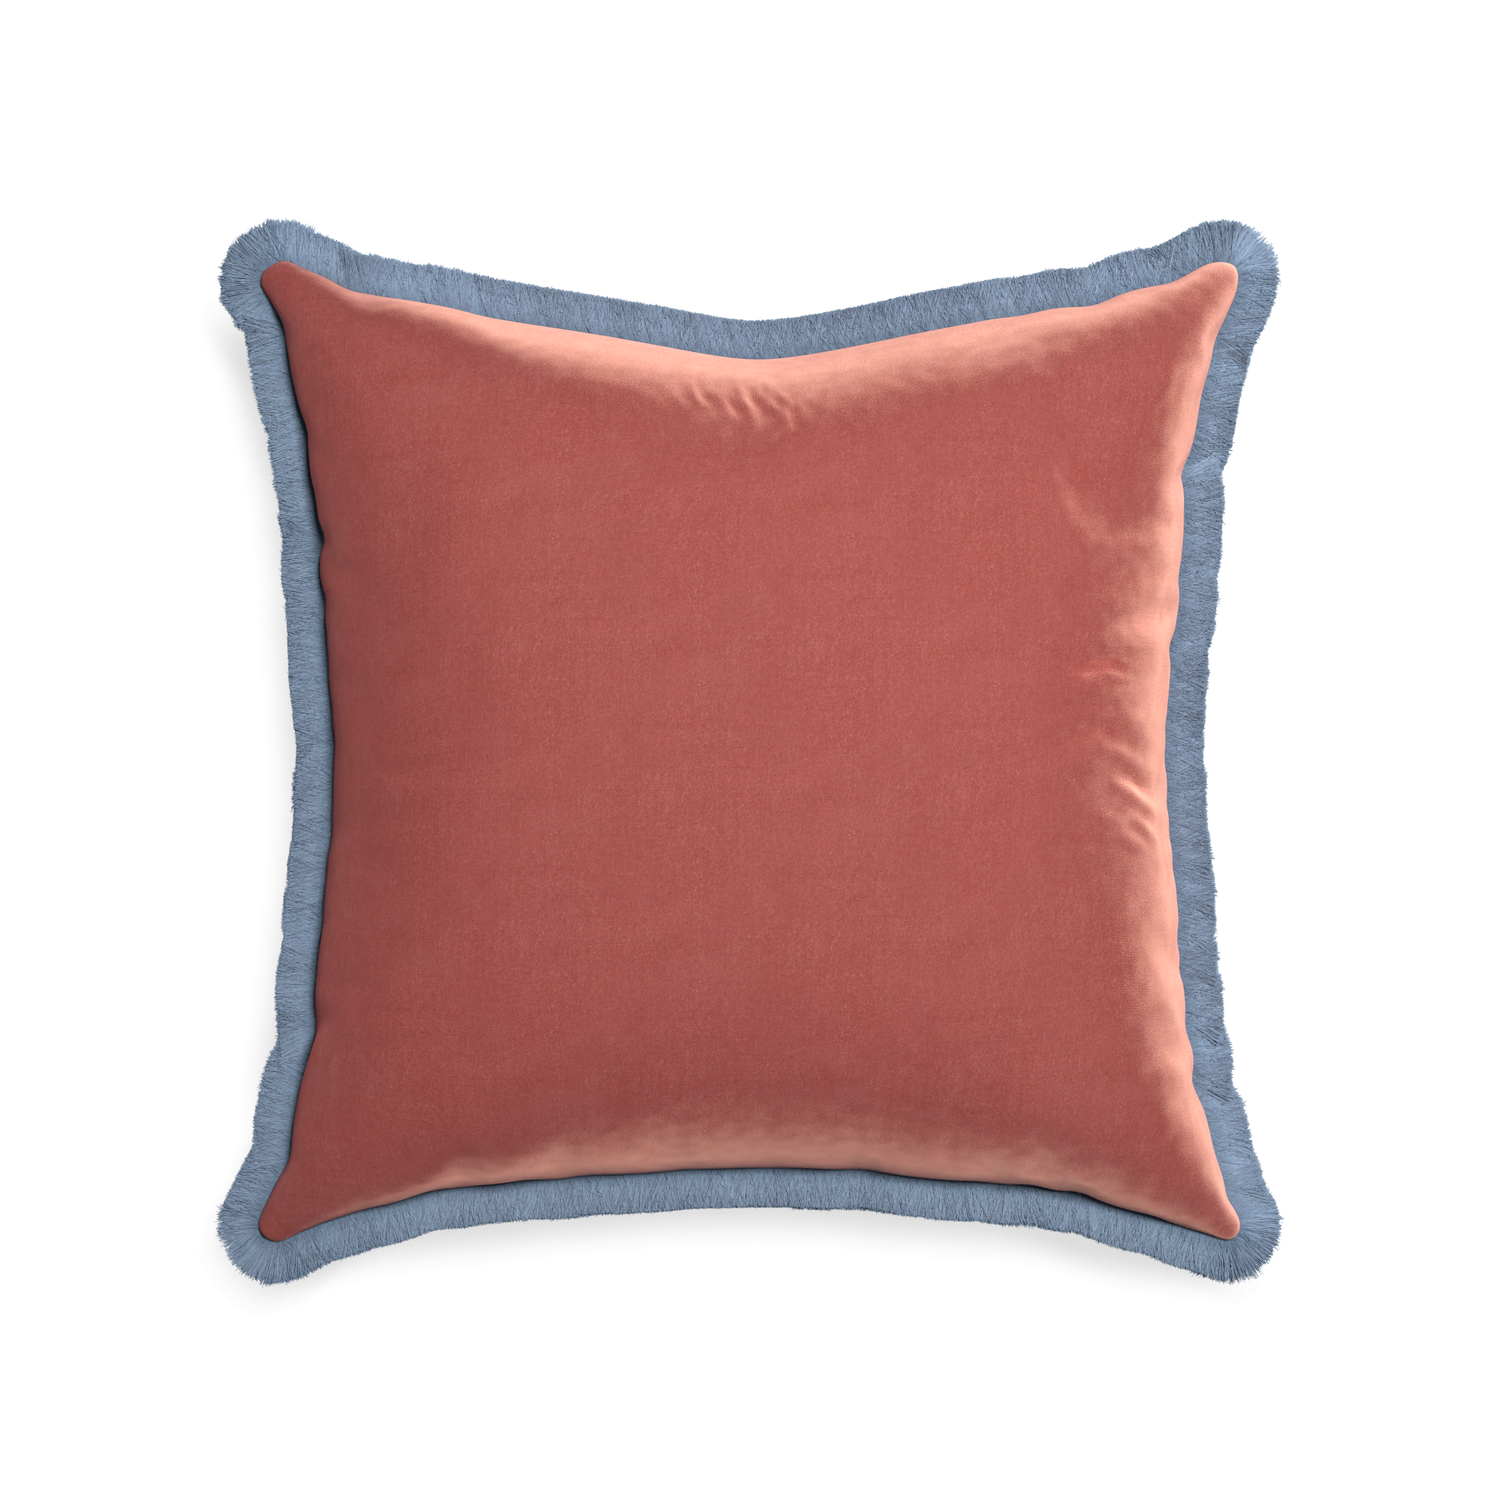 square coral velvet pillow with sky blue fringe